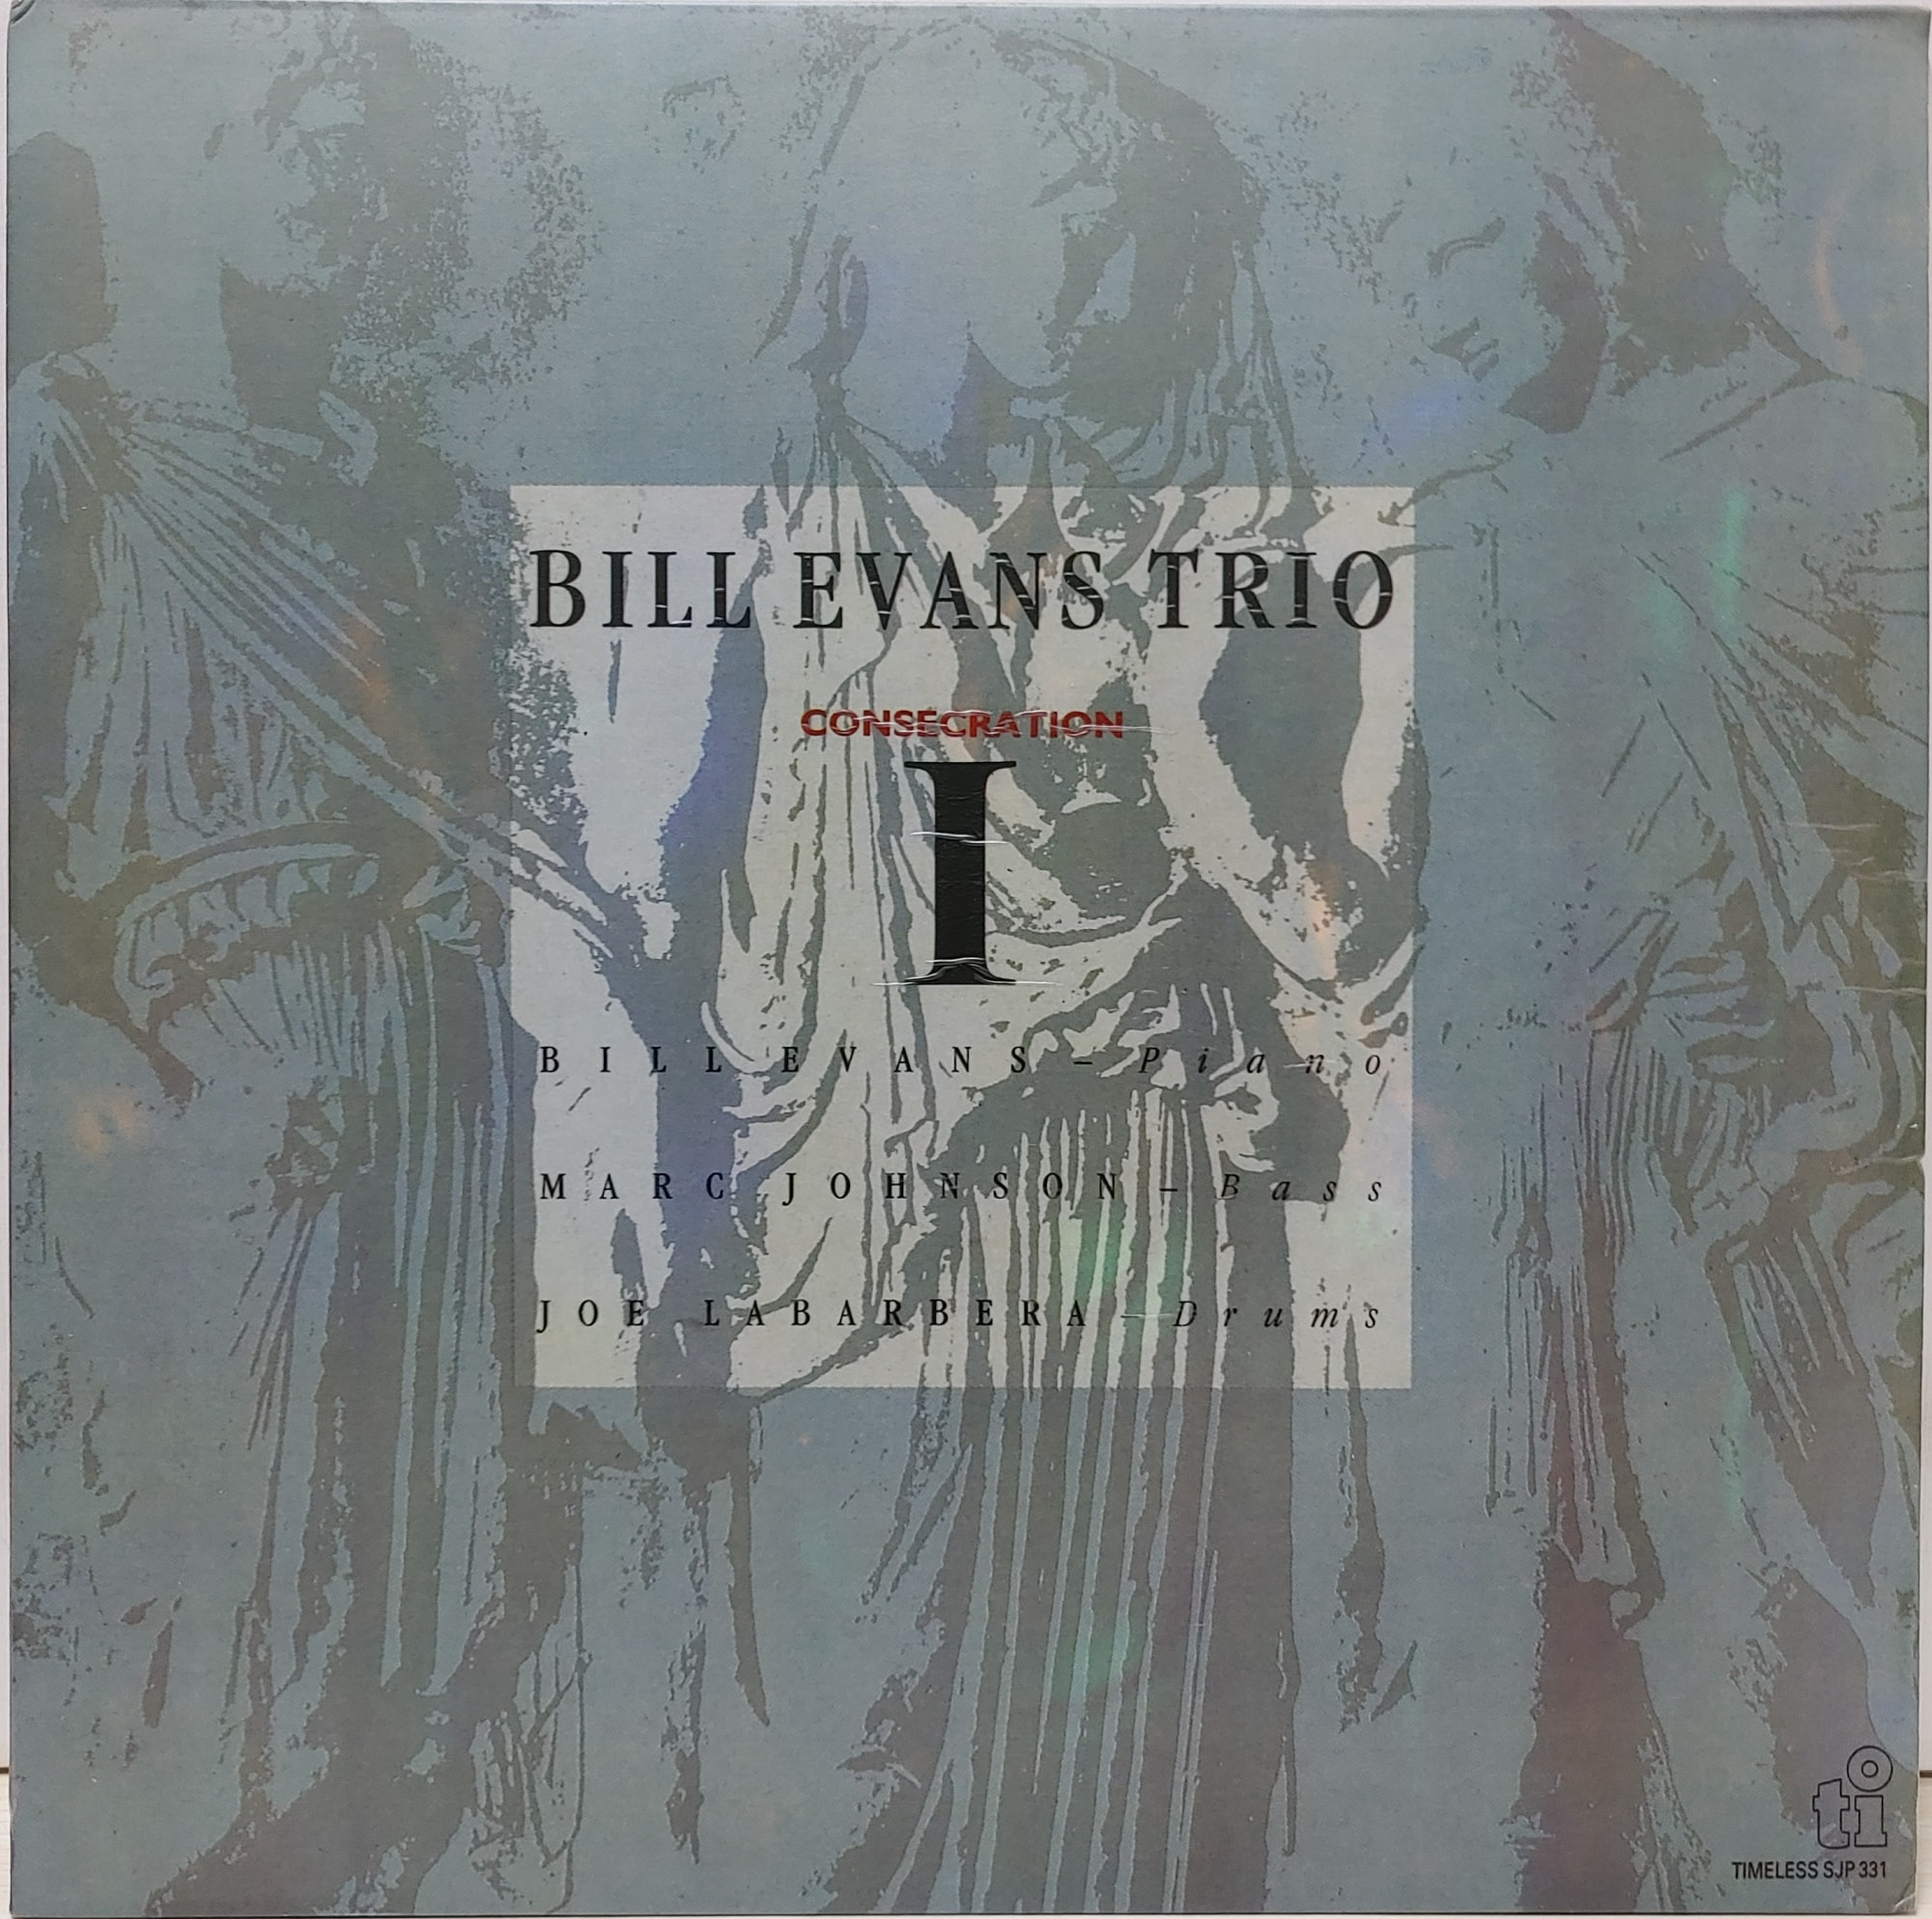 BILL EVANS TRIO / CONSECRATION